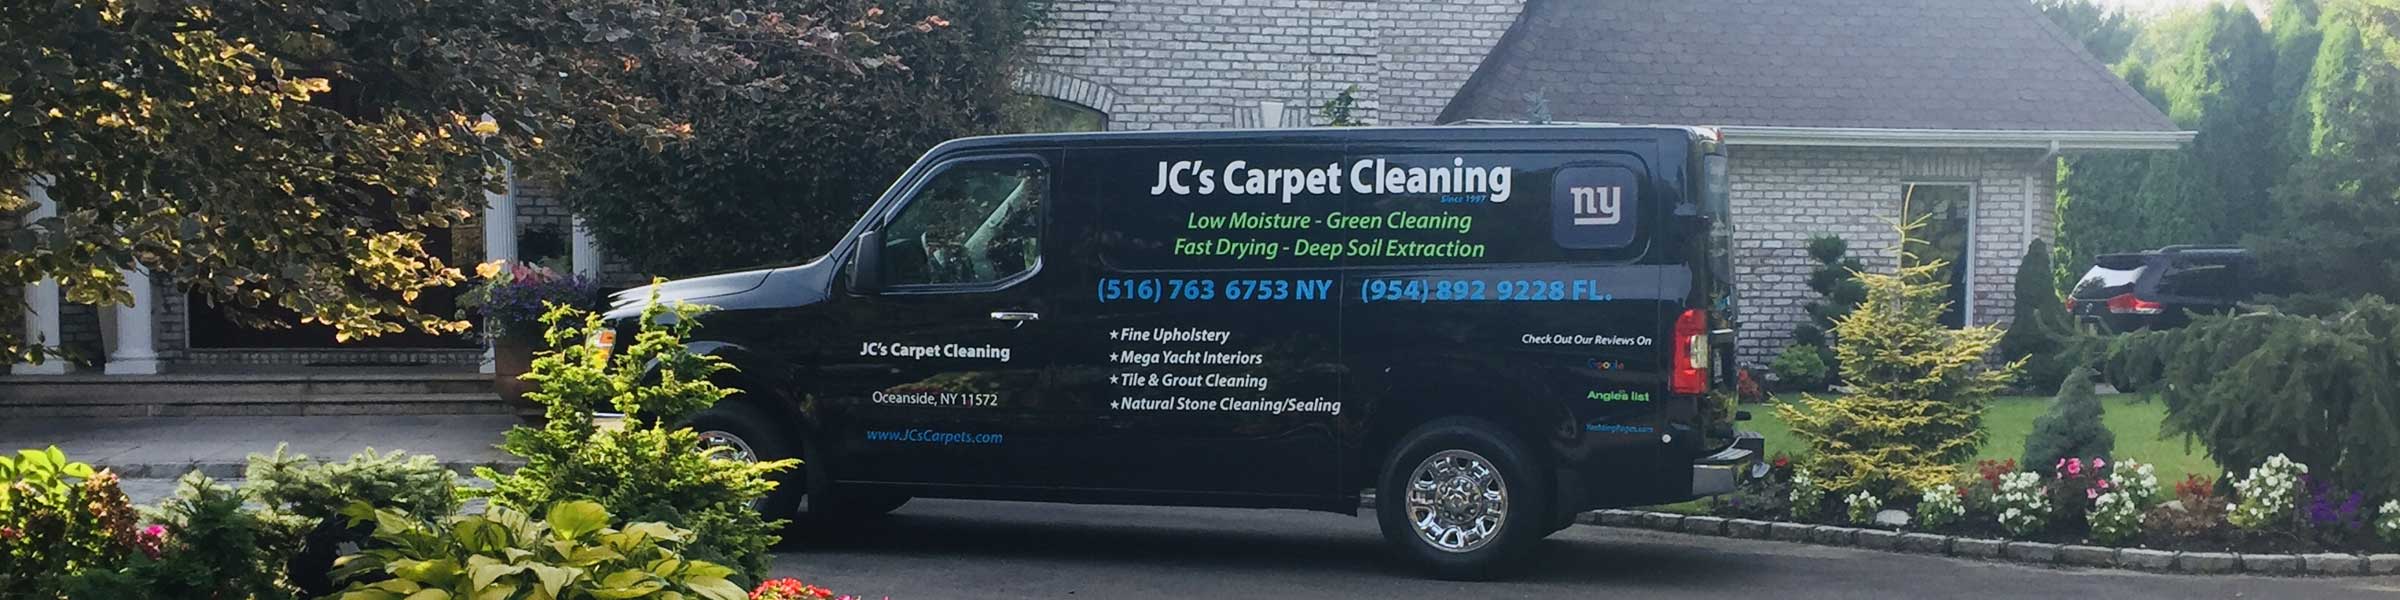 JC's Carpet Cleaning slider